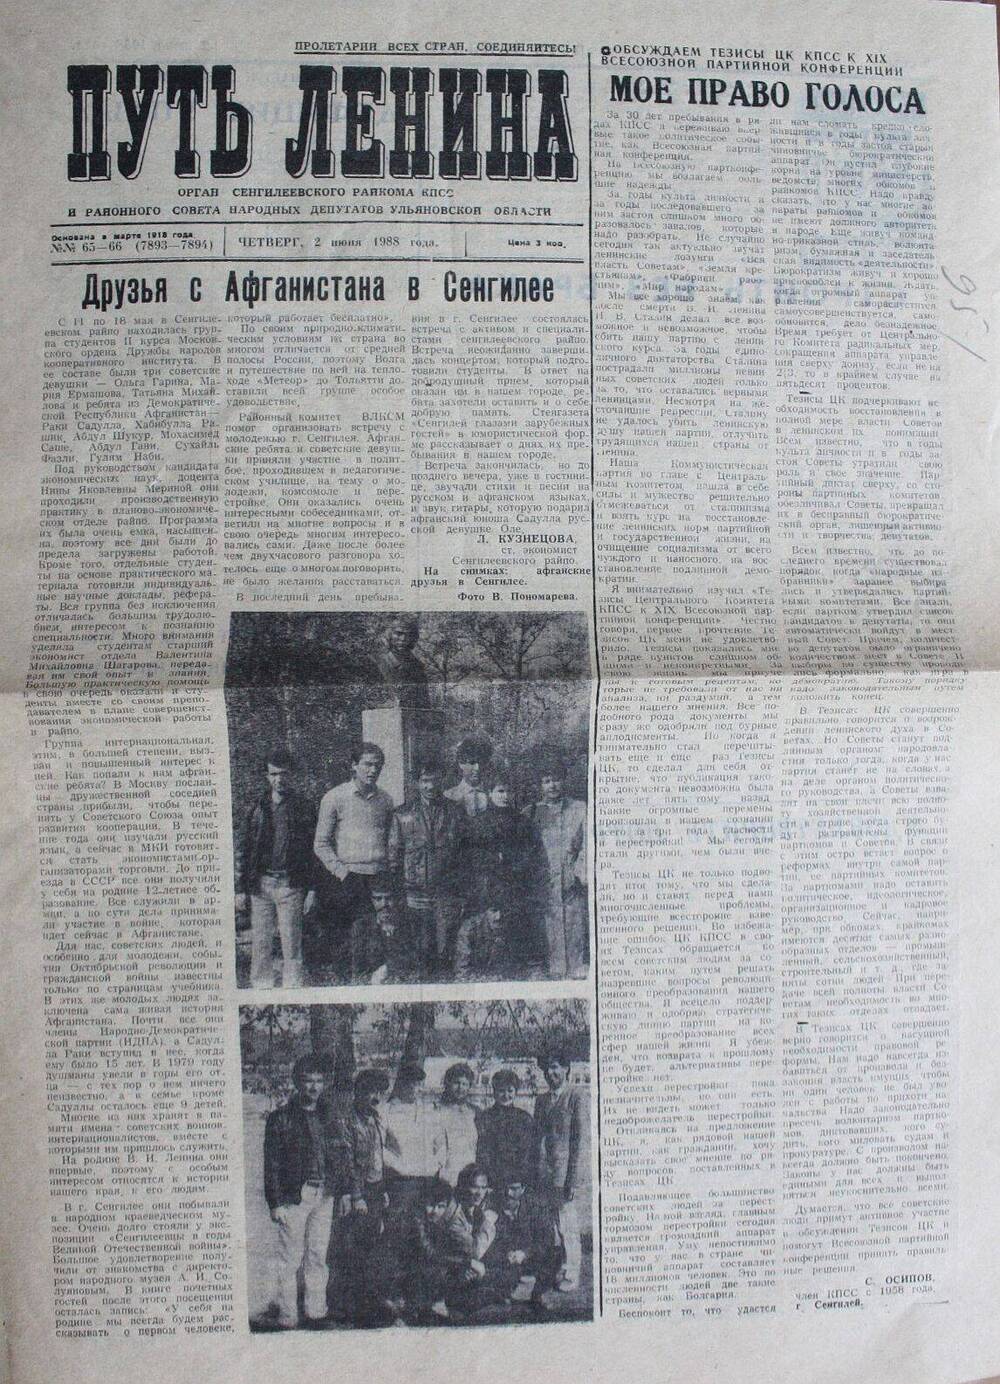 Газета «Путь Ленина» от 2.06.1988 г. со статьей «Друзья с Афганистана в Сенгилее».